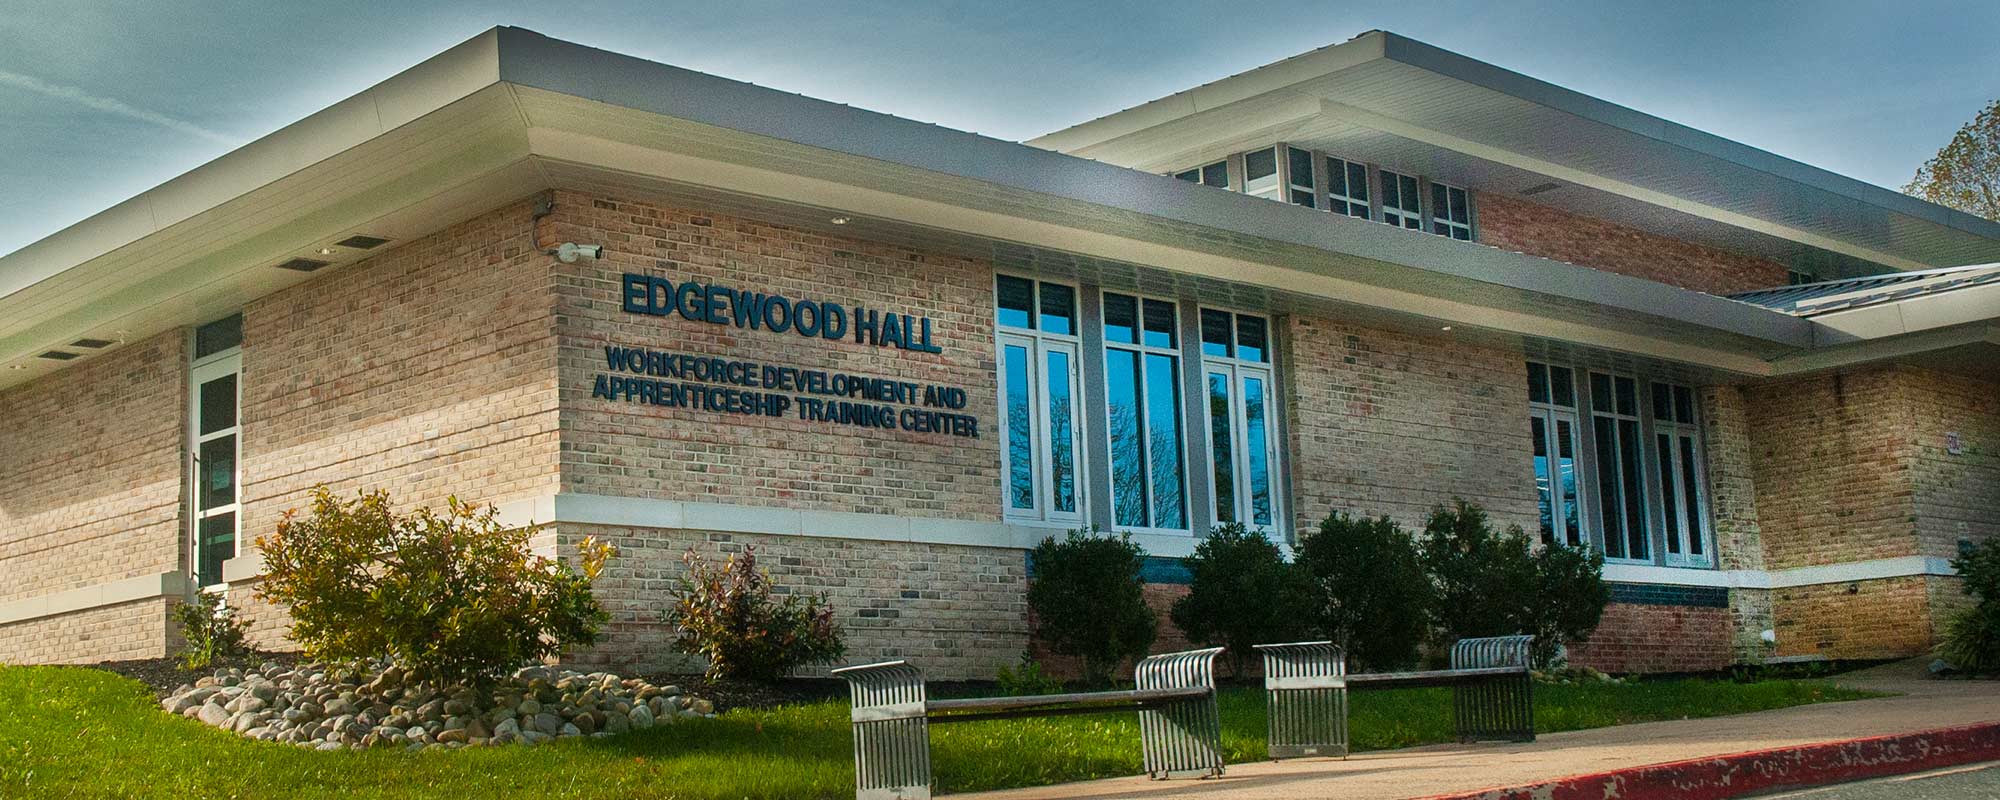 Edgewood Hall